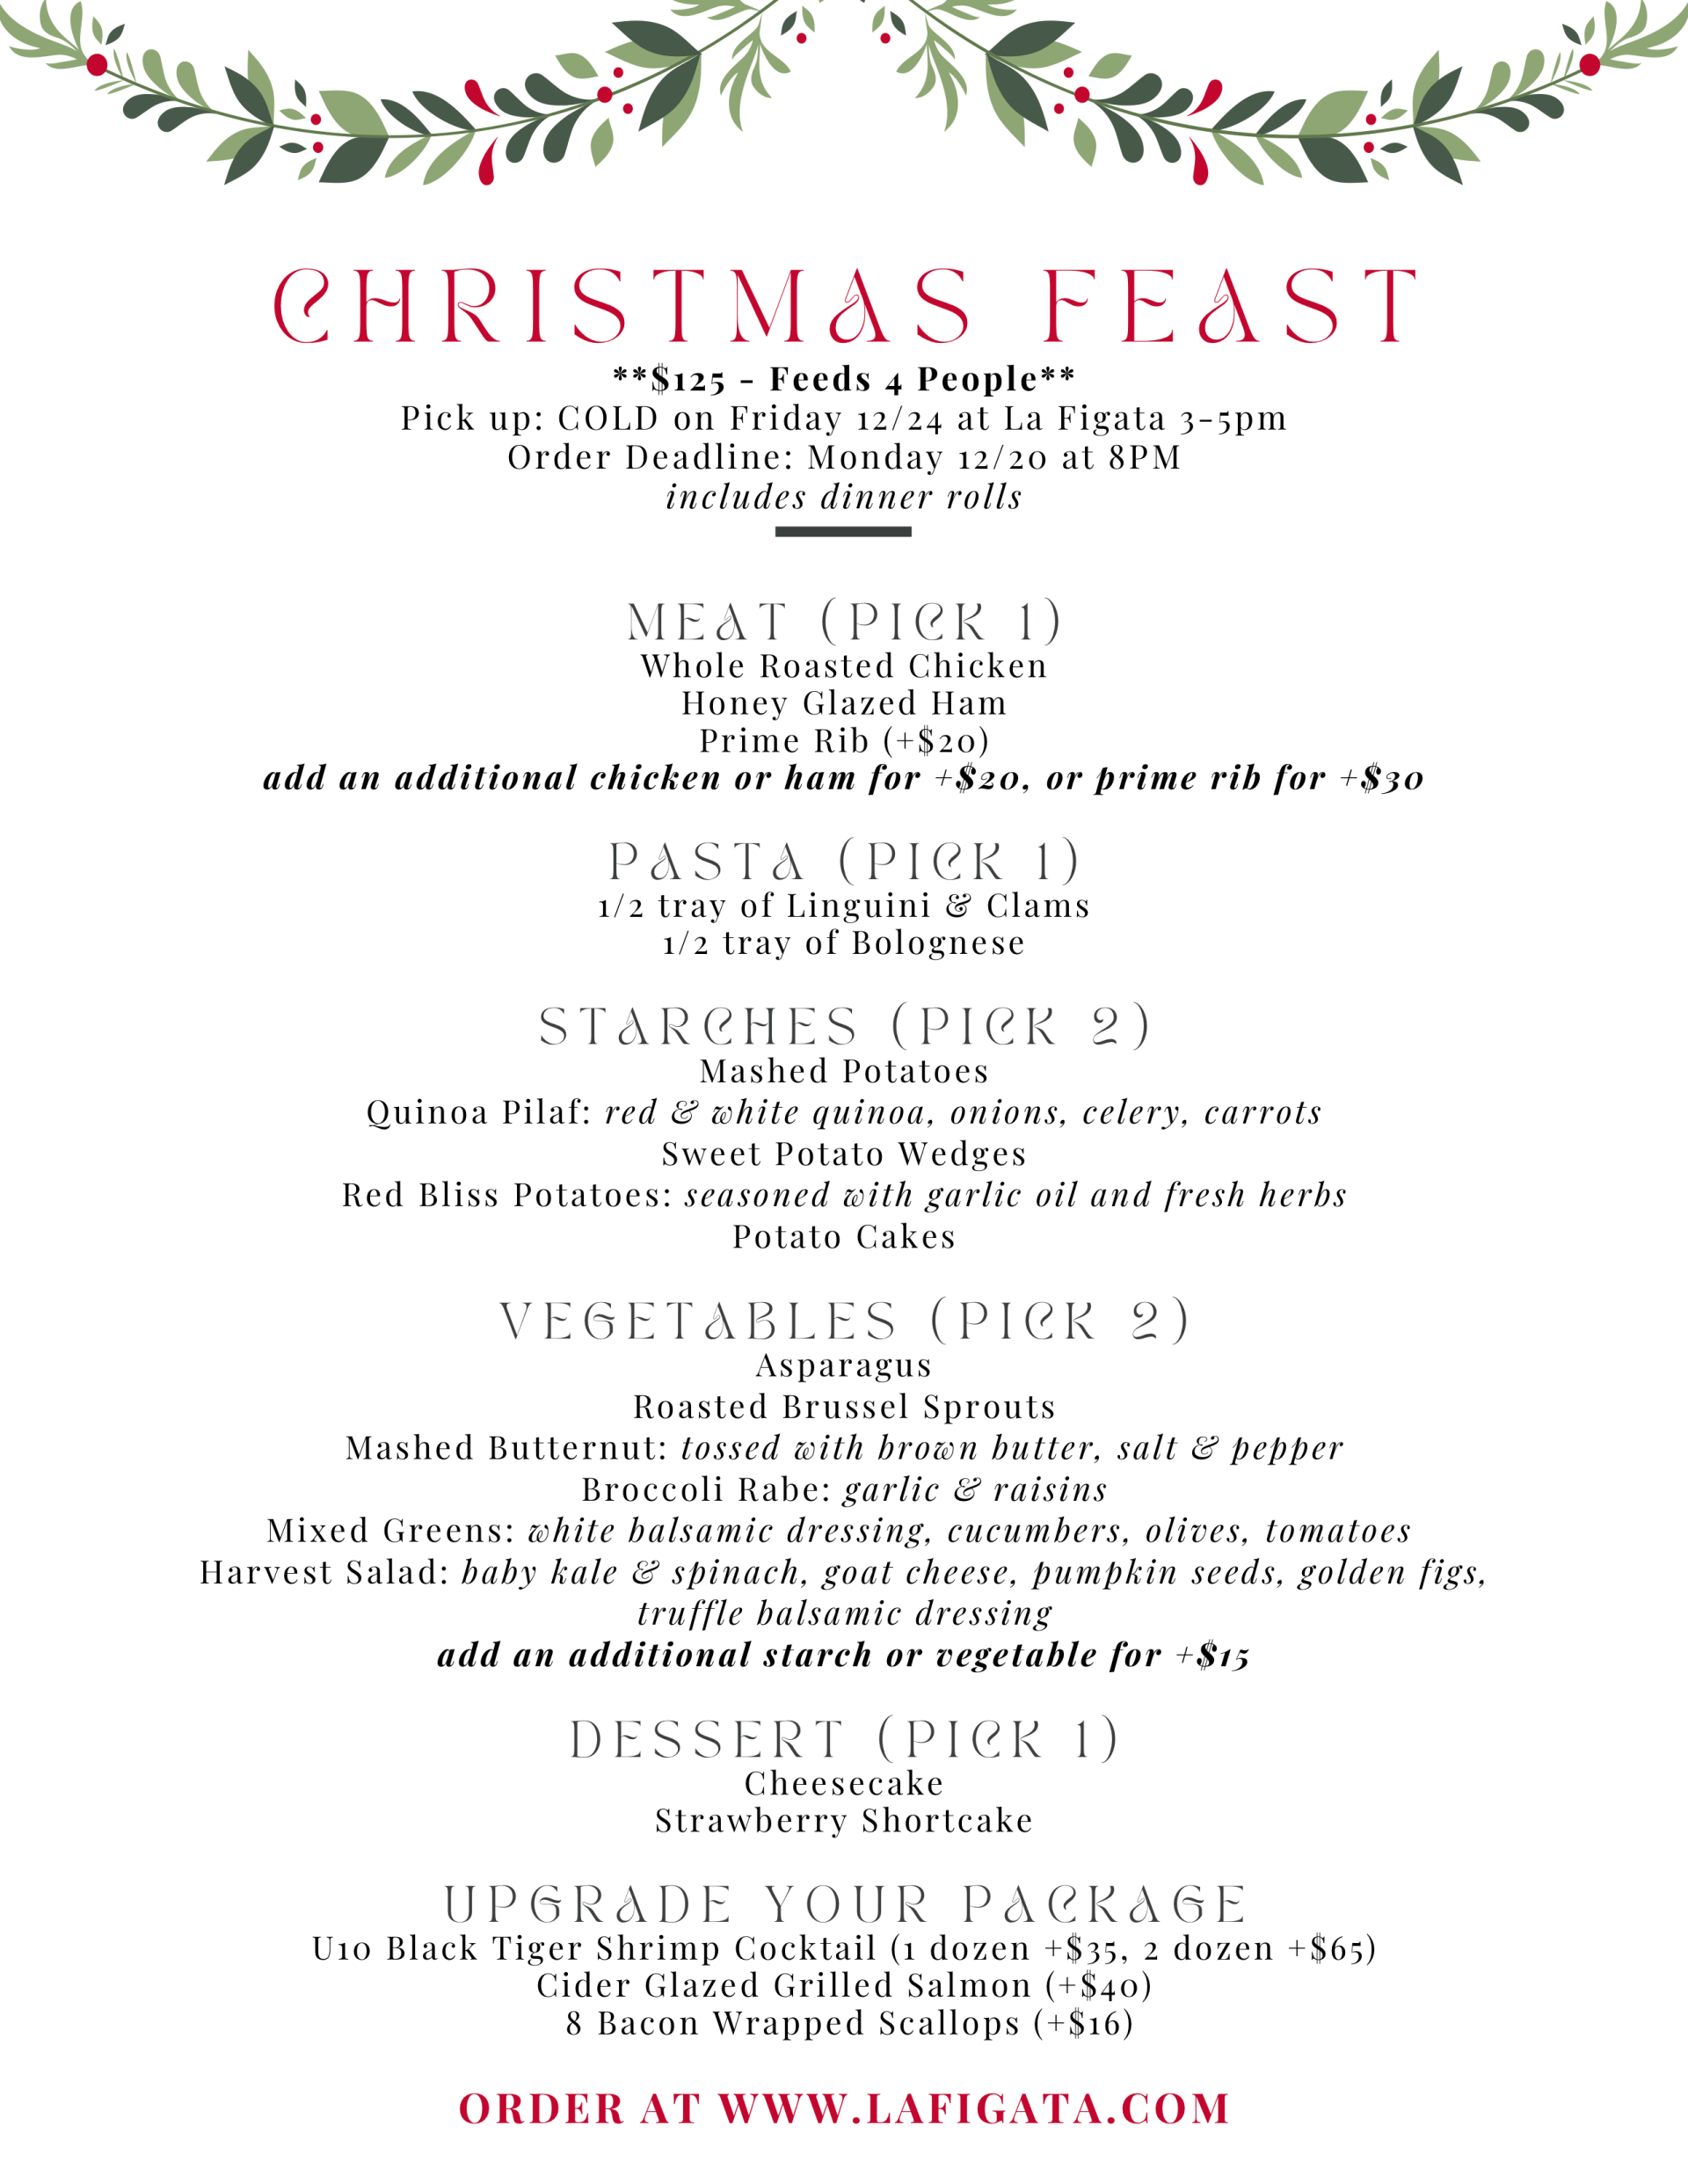 La Figata Christmas Feast Dec 2021 Granby Connecticut